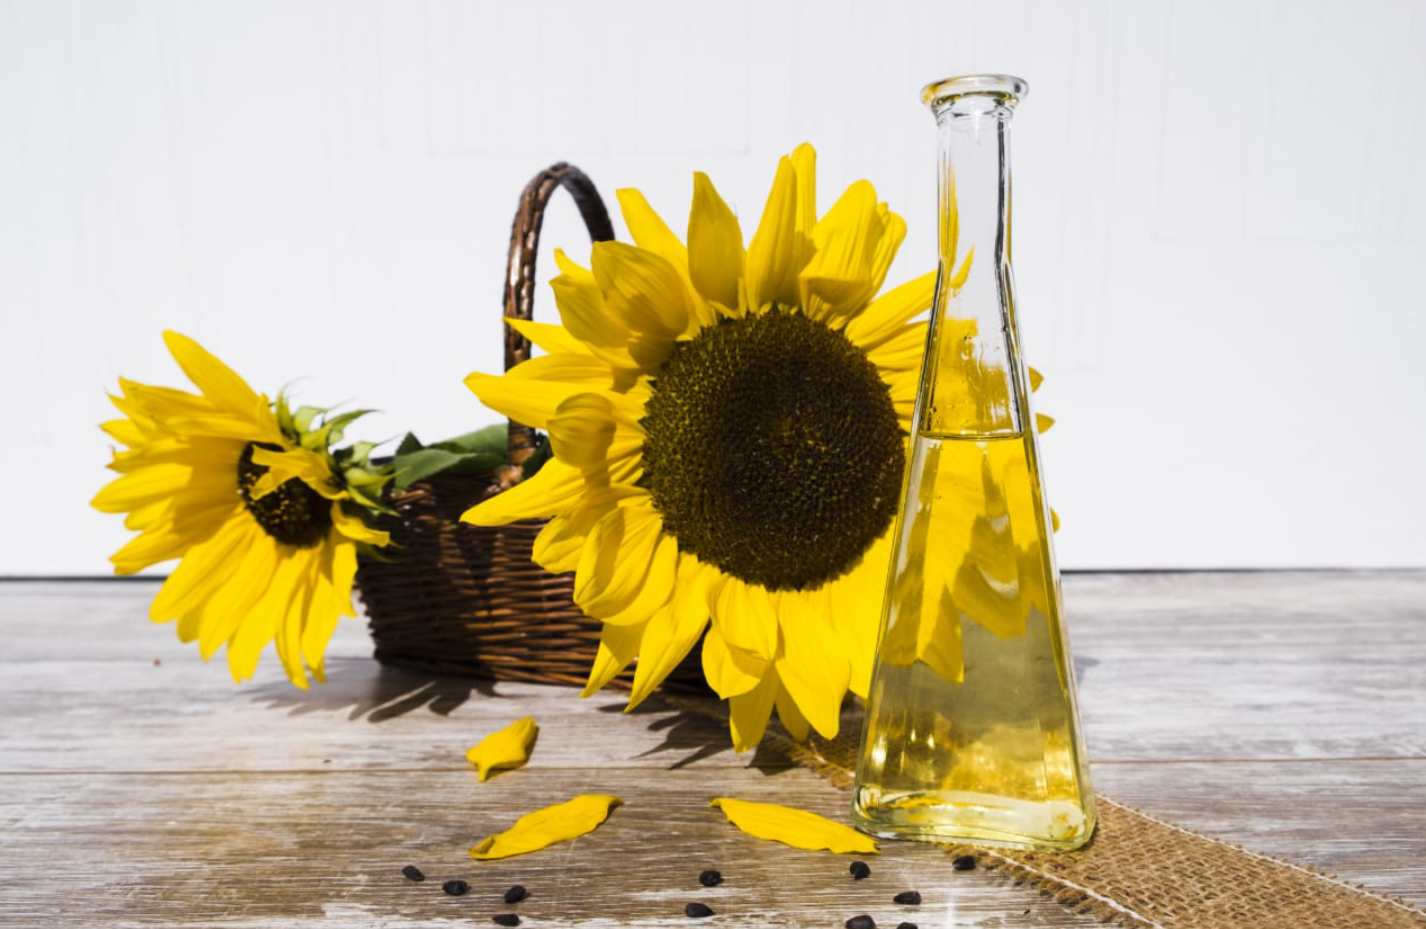 sun flower oil